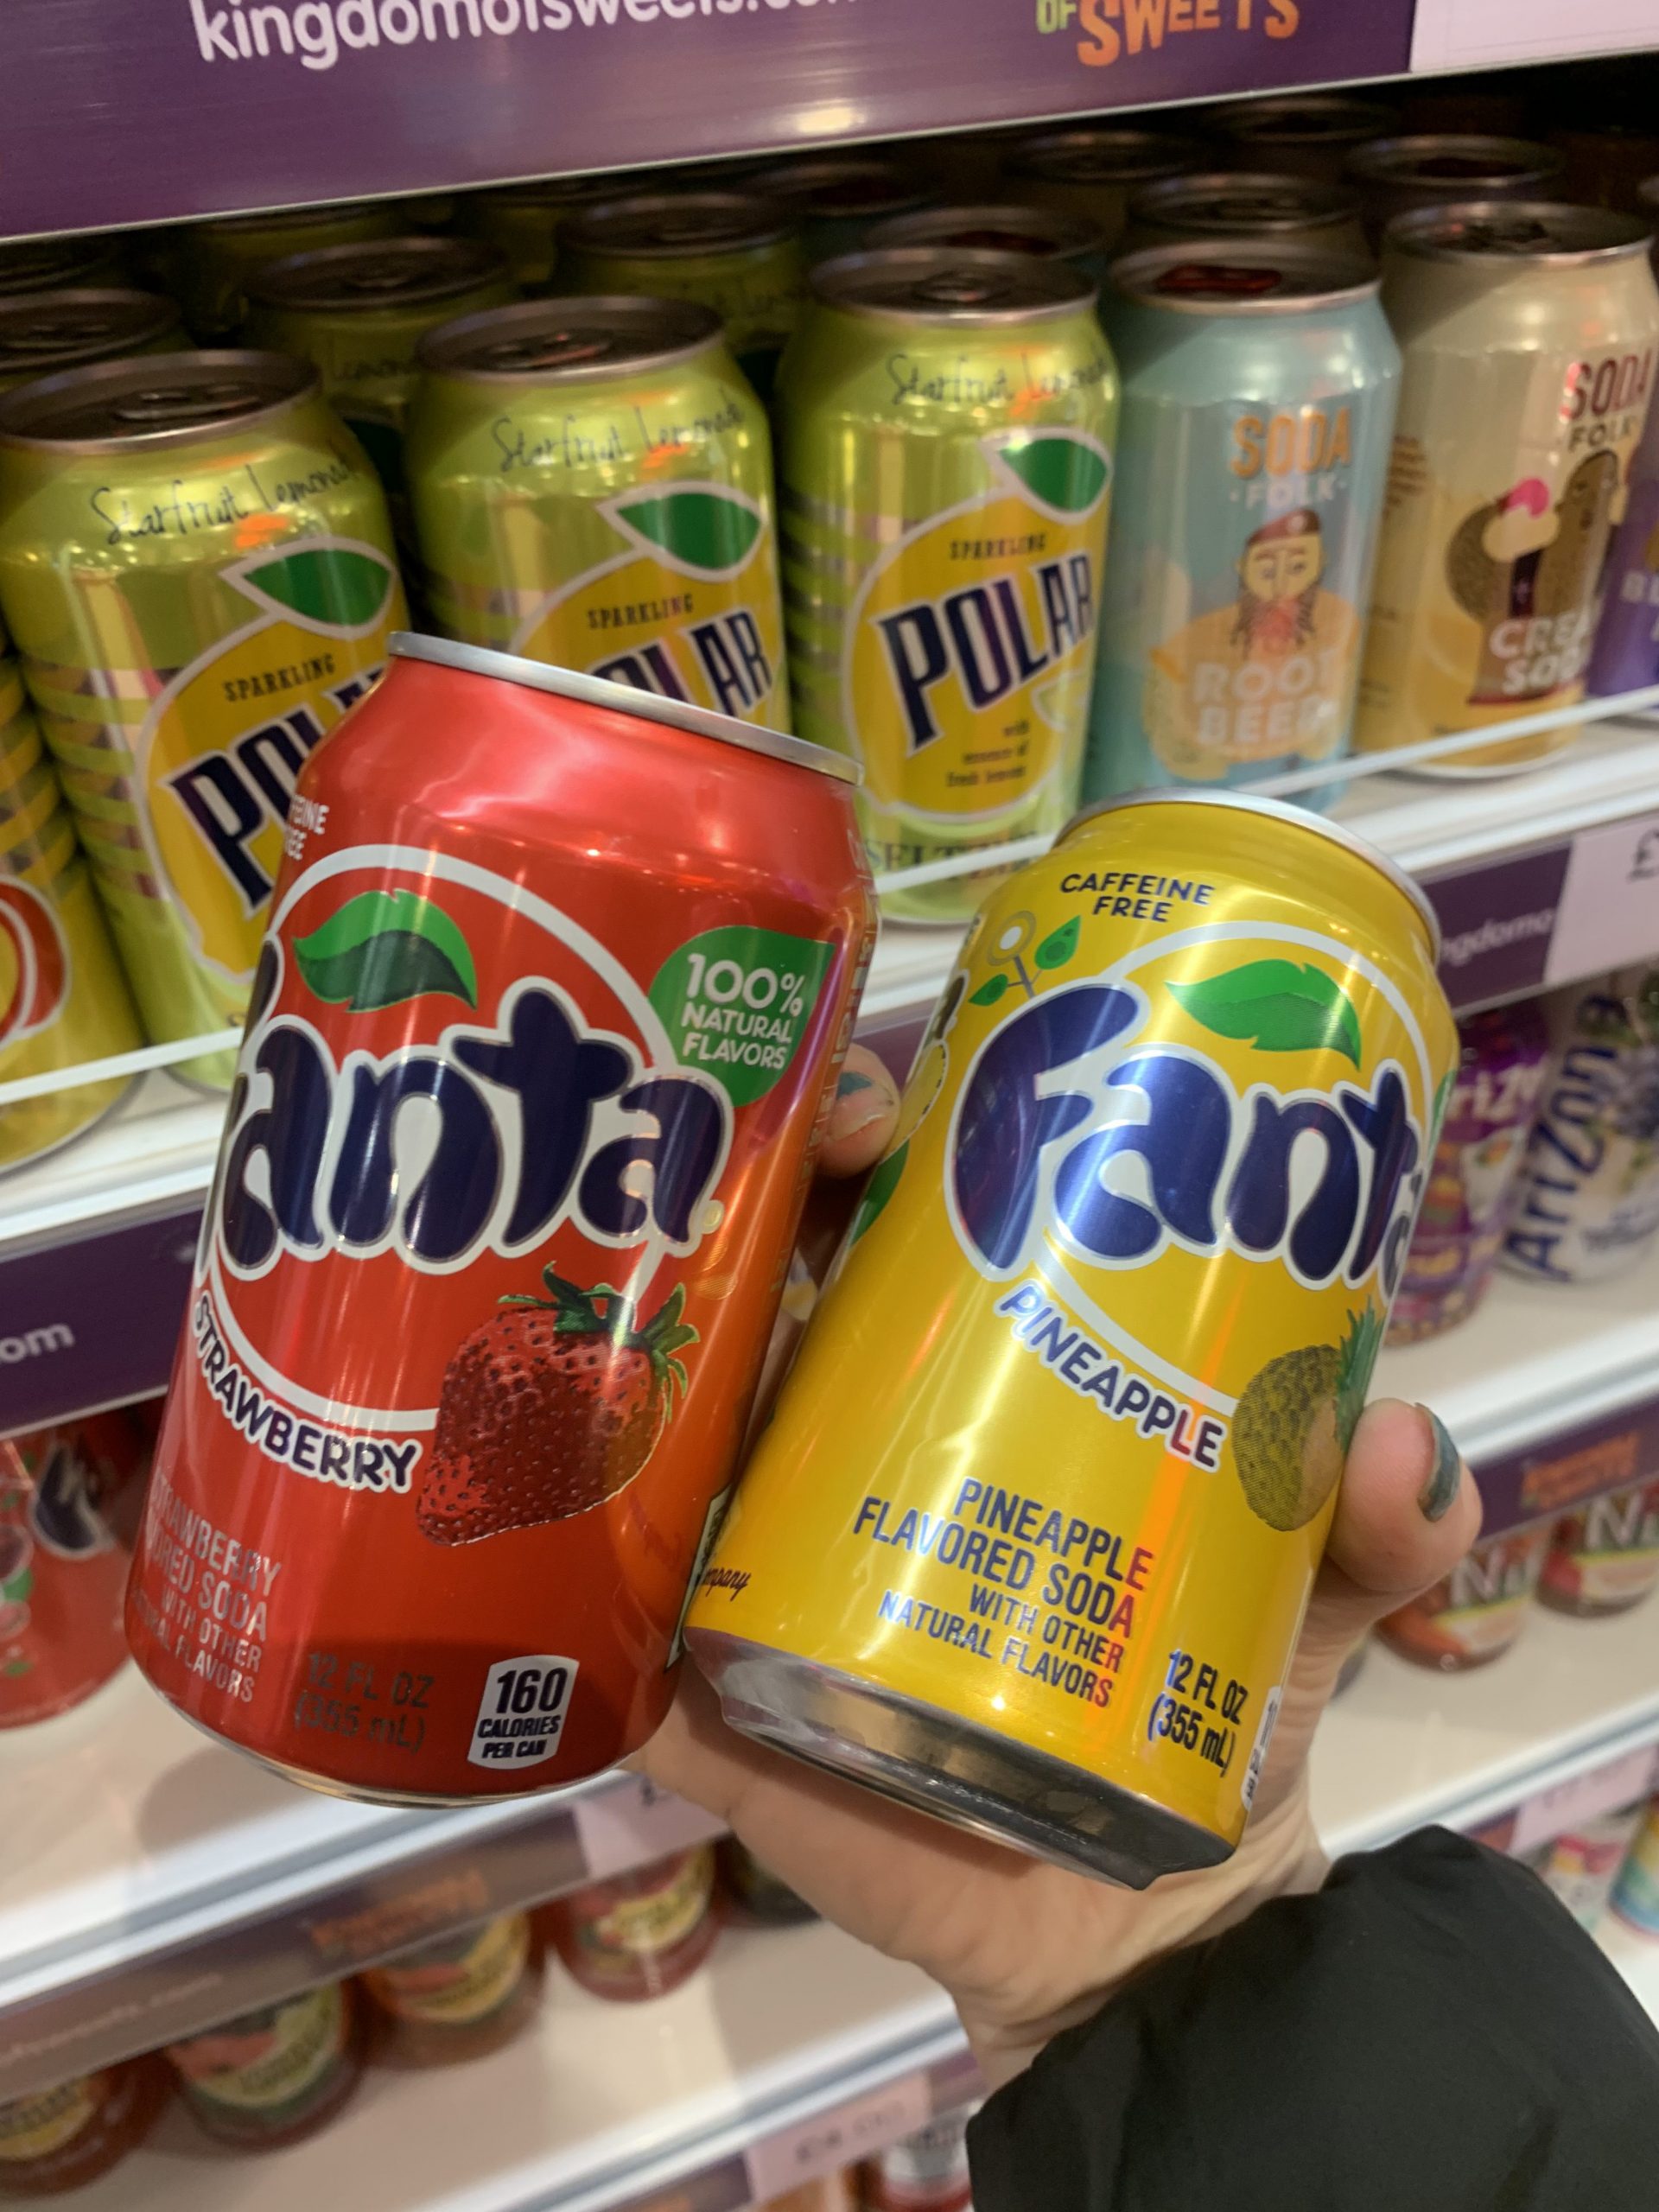 fanta in kingdom of sweets